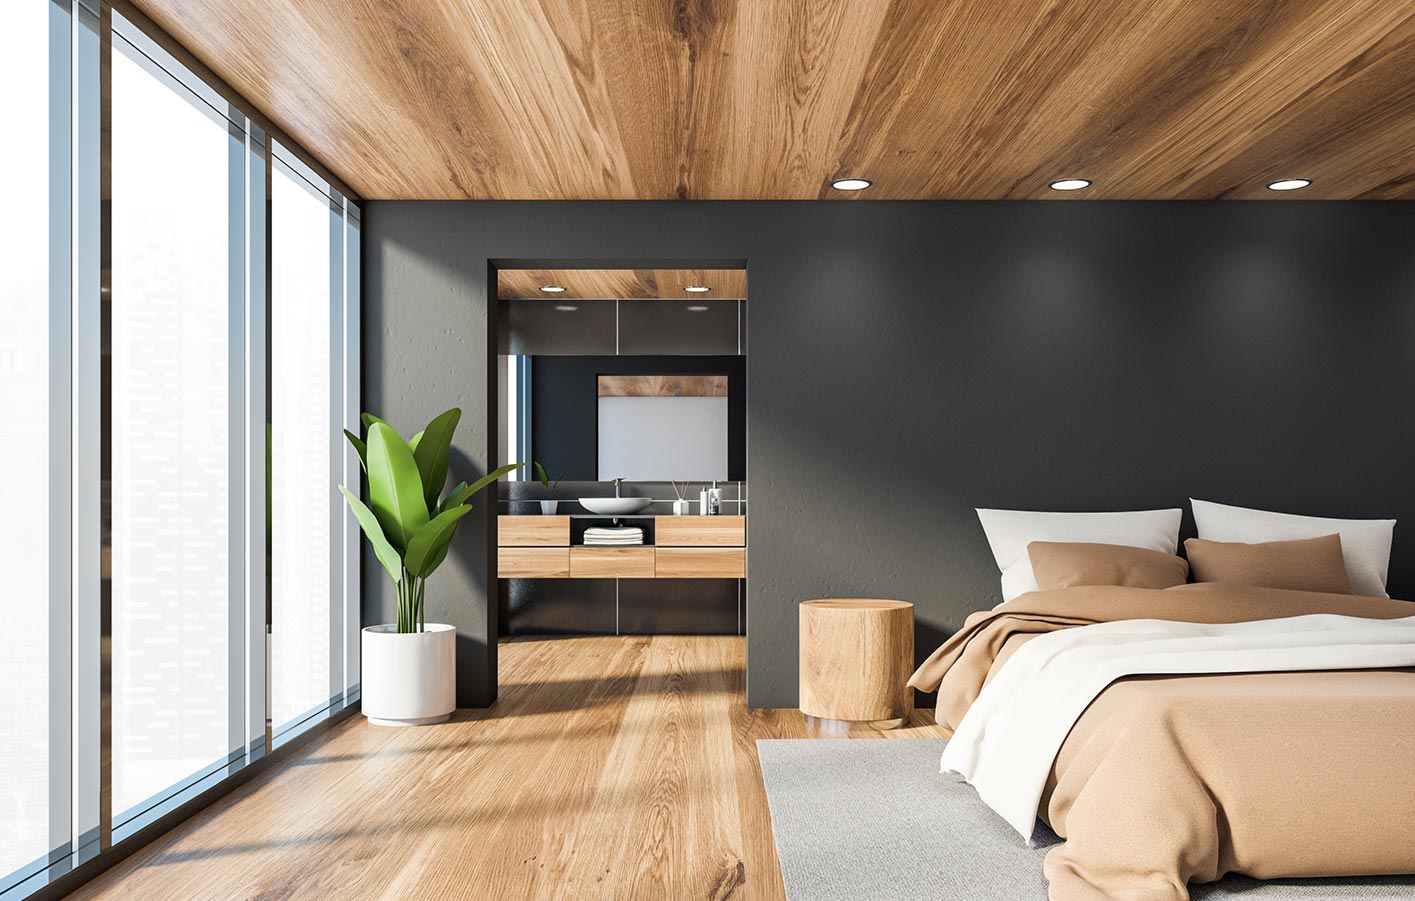 Wand- und Bodengestaltung aus Holz in einem modernen Schlafzimmer mit Blick in das Bad.